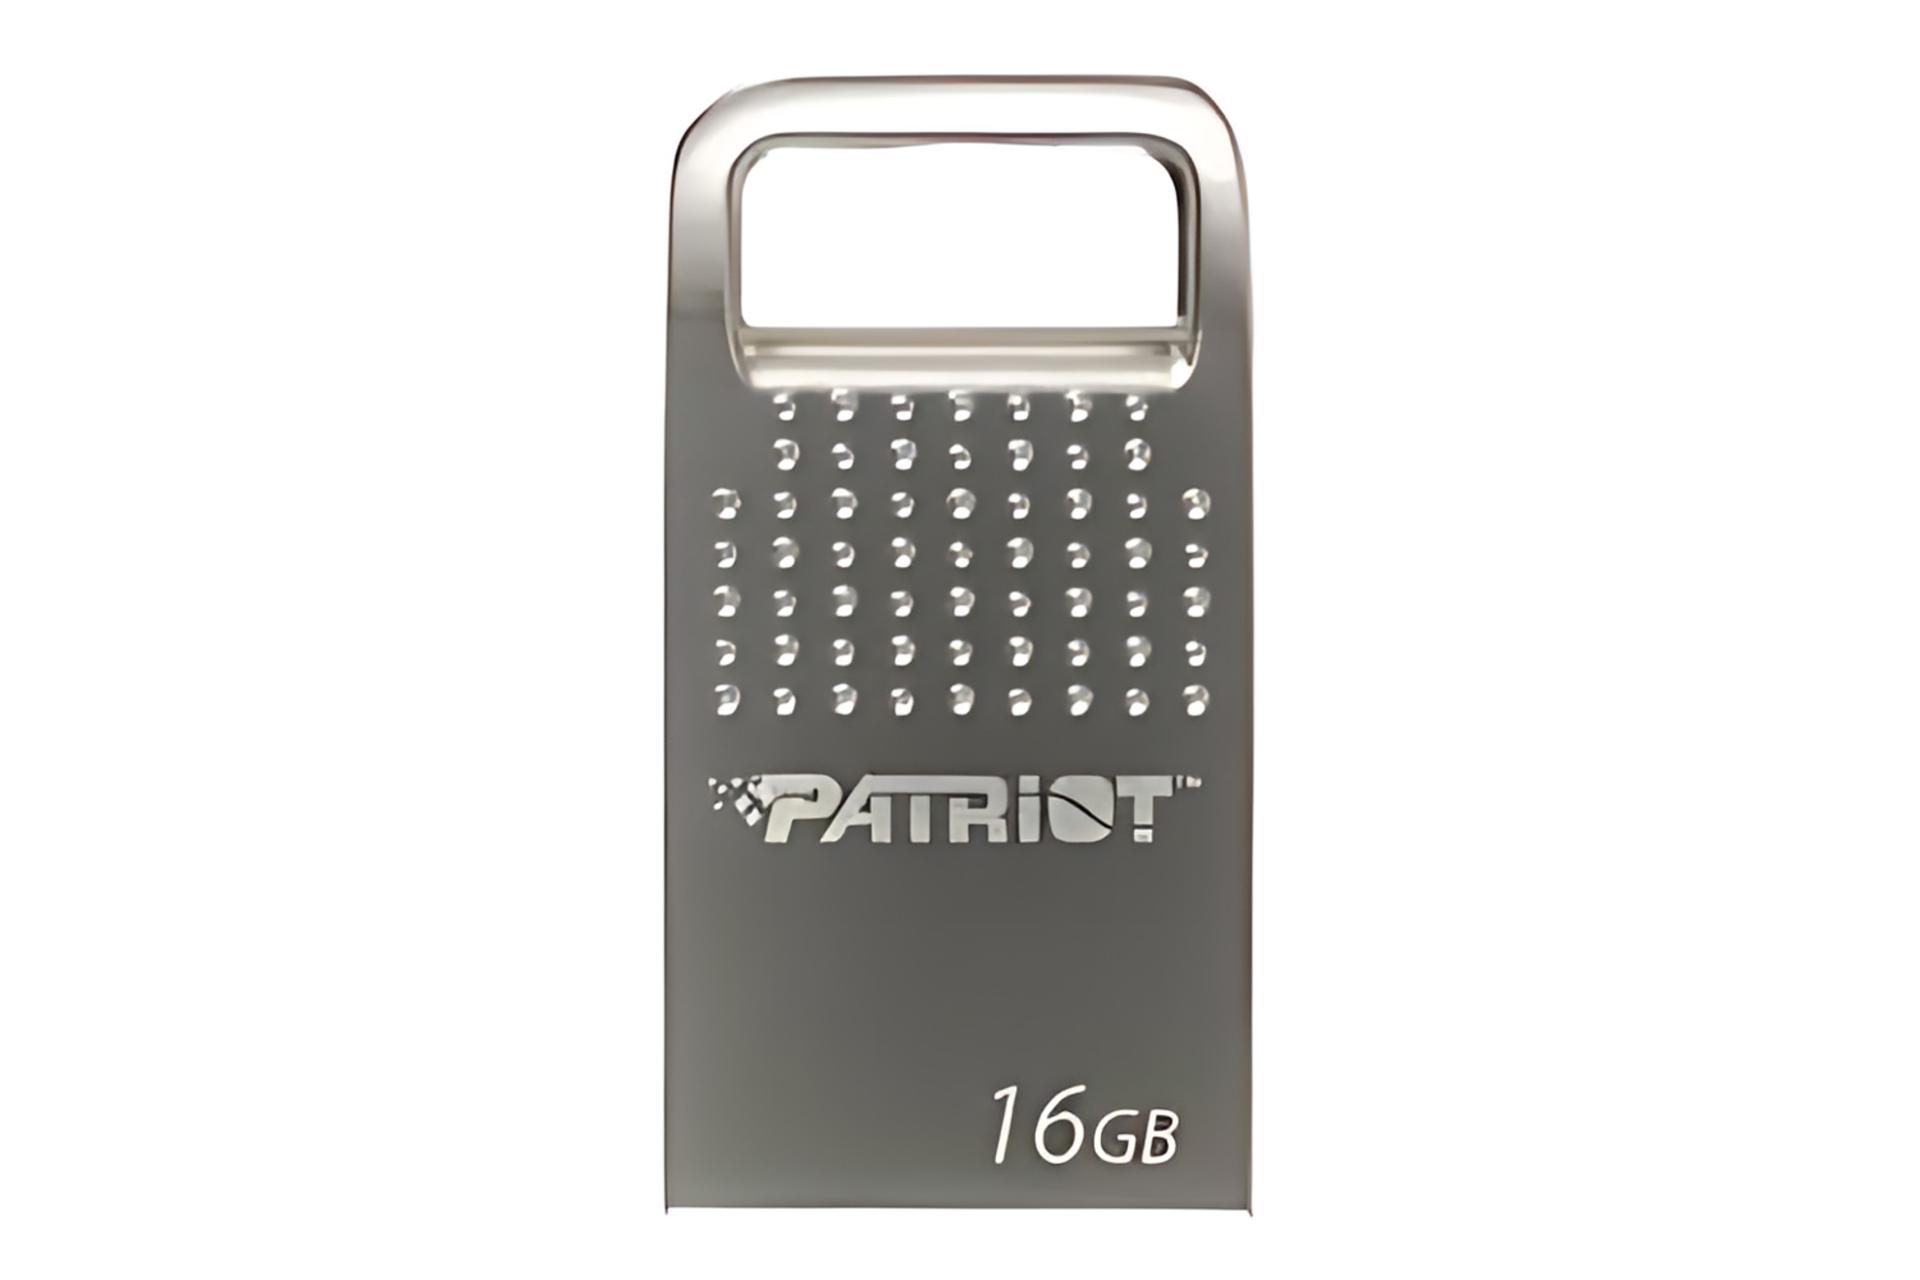 فلش مموری پاتریوت Patriot TAB200 16GB USB 2.0